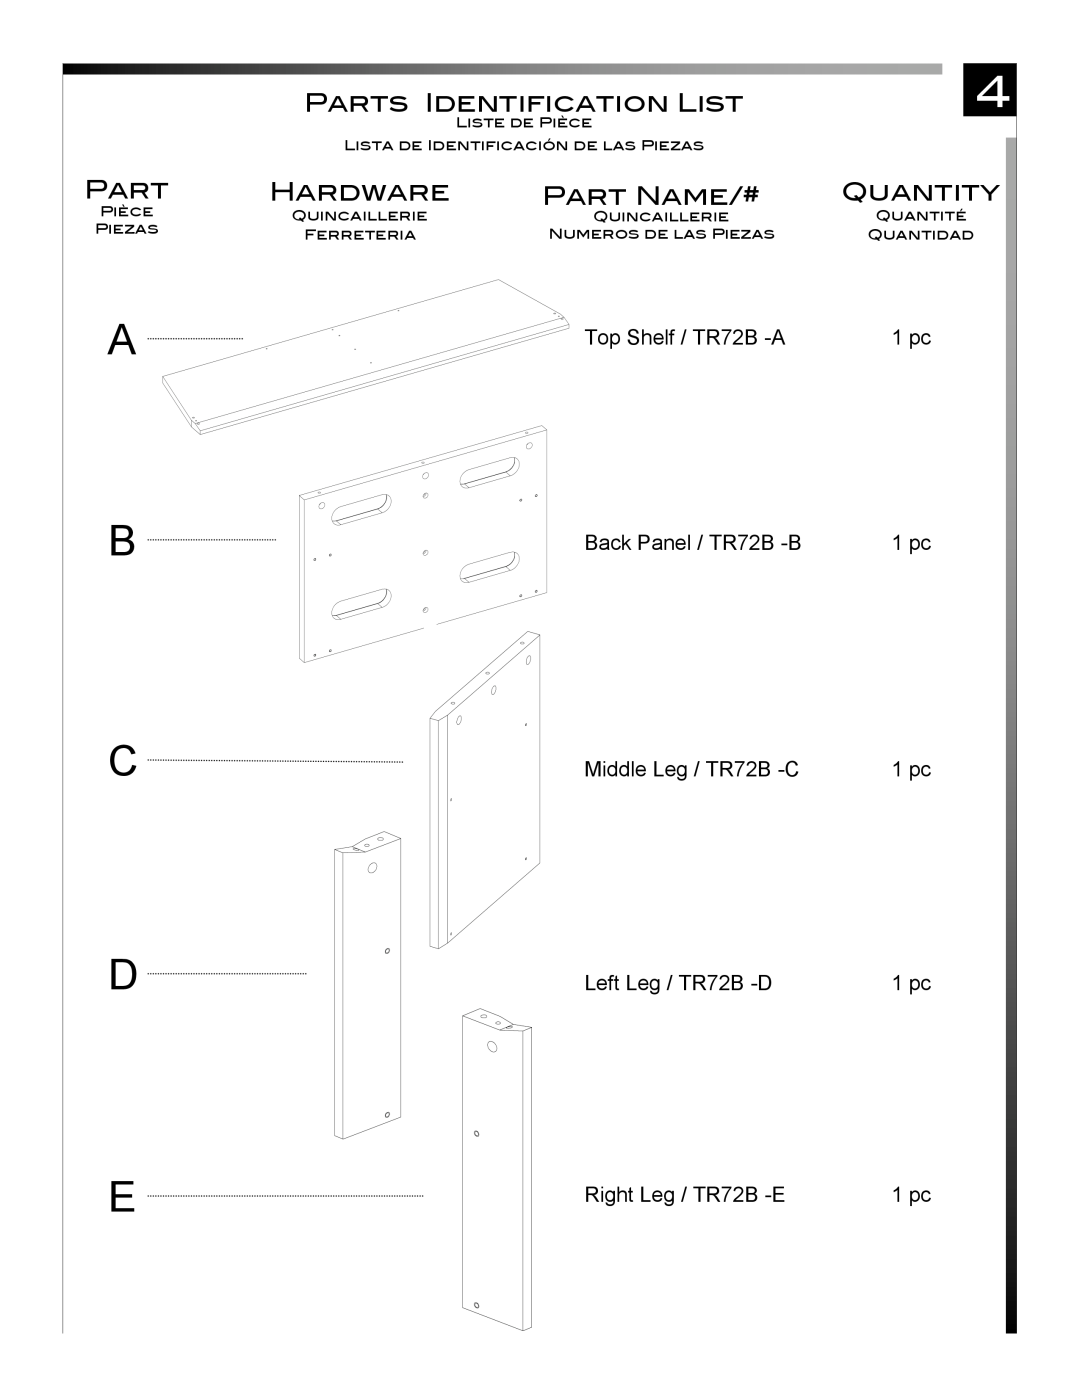 Pinnacle Design A B C D, Top Shelf / TR72B -A Back Panel / TR72B -B Middle Leg / TR72B -C, Left Leg / TR72B -D, Part 